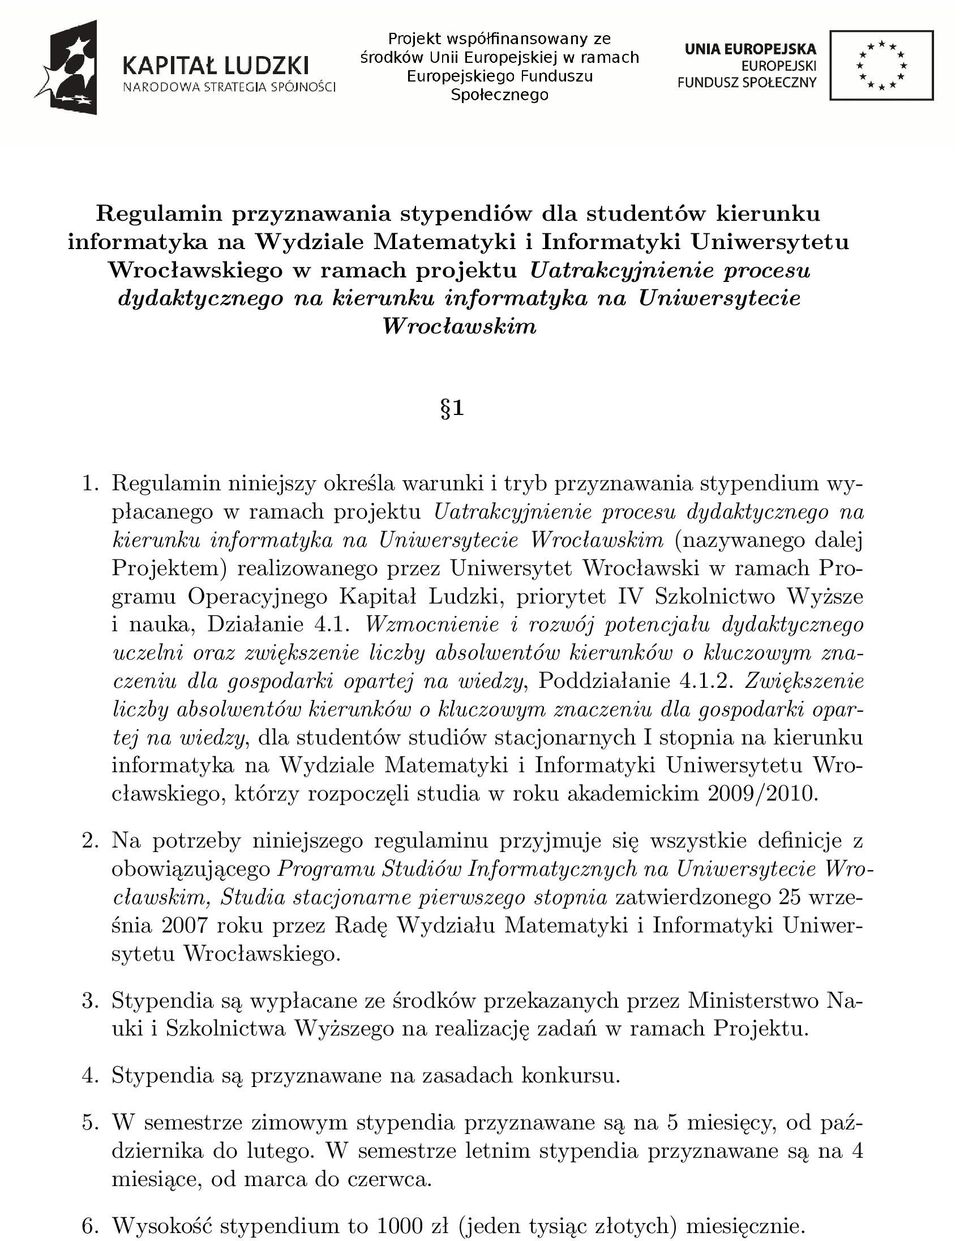 Regulamin niniejszy określa warunki i tryb przyznawania stypendium wypłacanego w ramach projektu Uatrakcyjnienie procesu dydaktycznego na kierunku informatyka na Uniwersytecie Wrocławskim (nazywanego